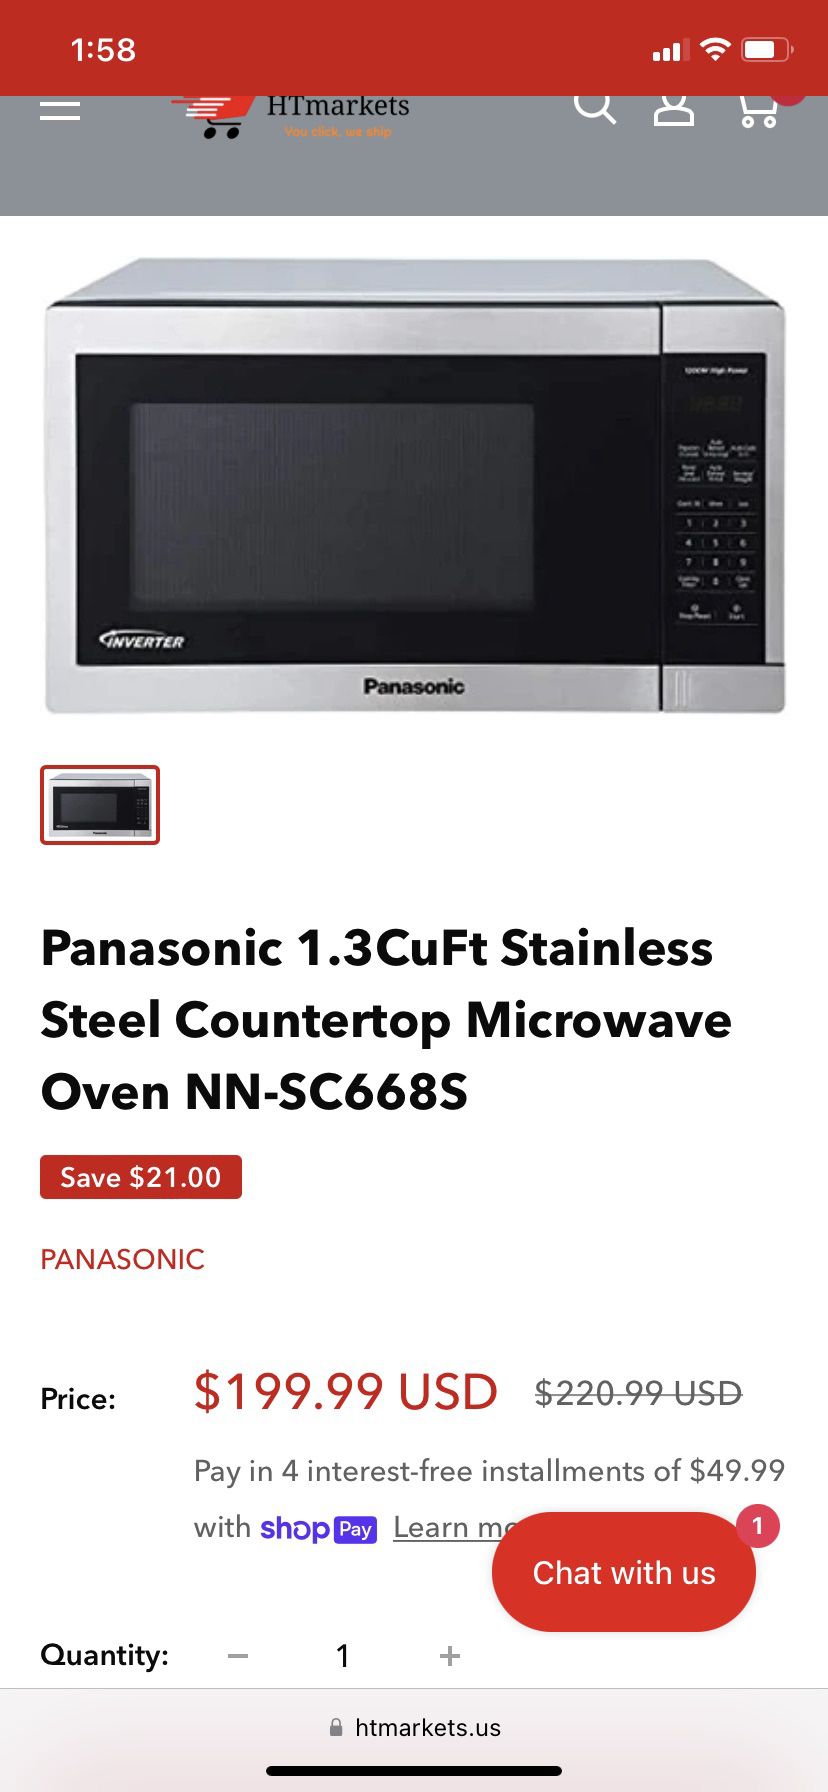 Panasonic microwave 